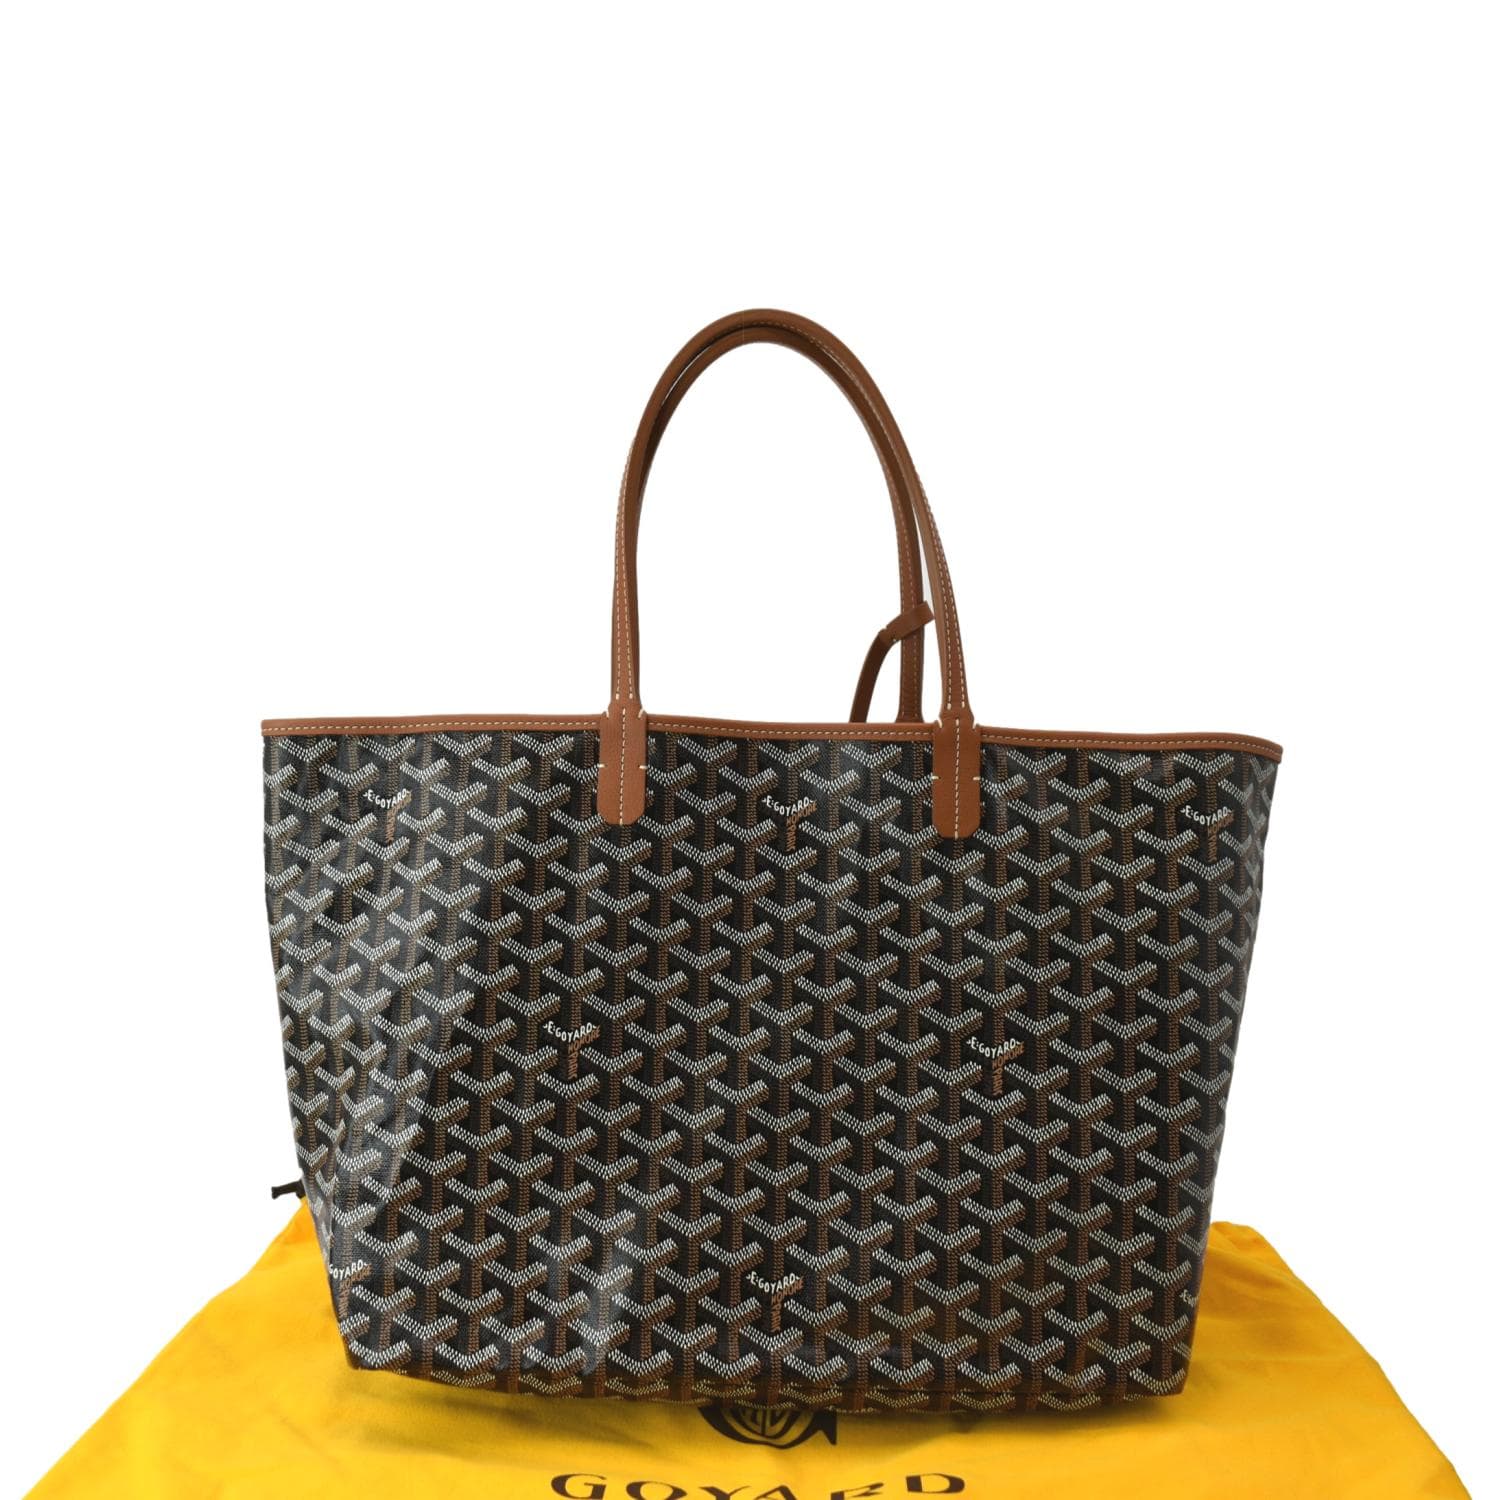 Goyard Saint Louis Tote PM Shopping bag black tan